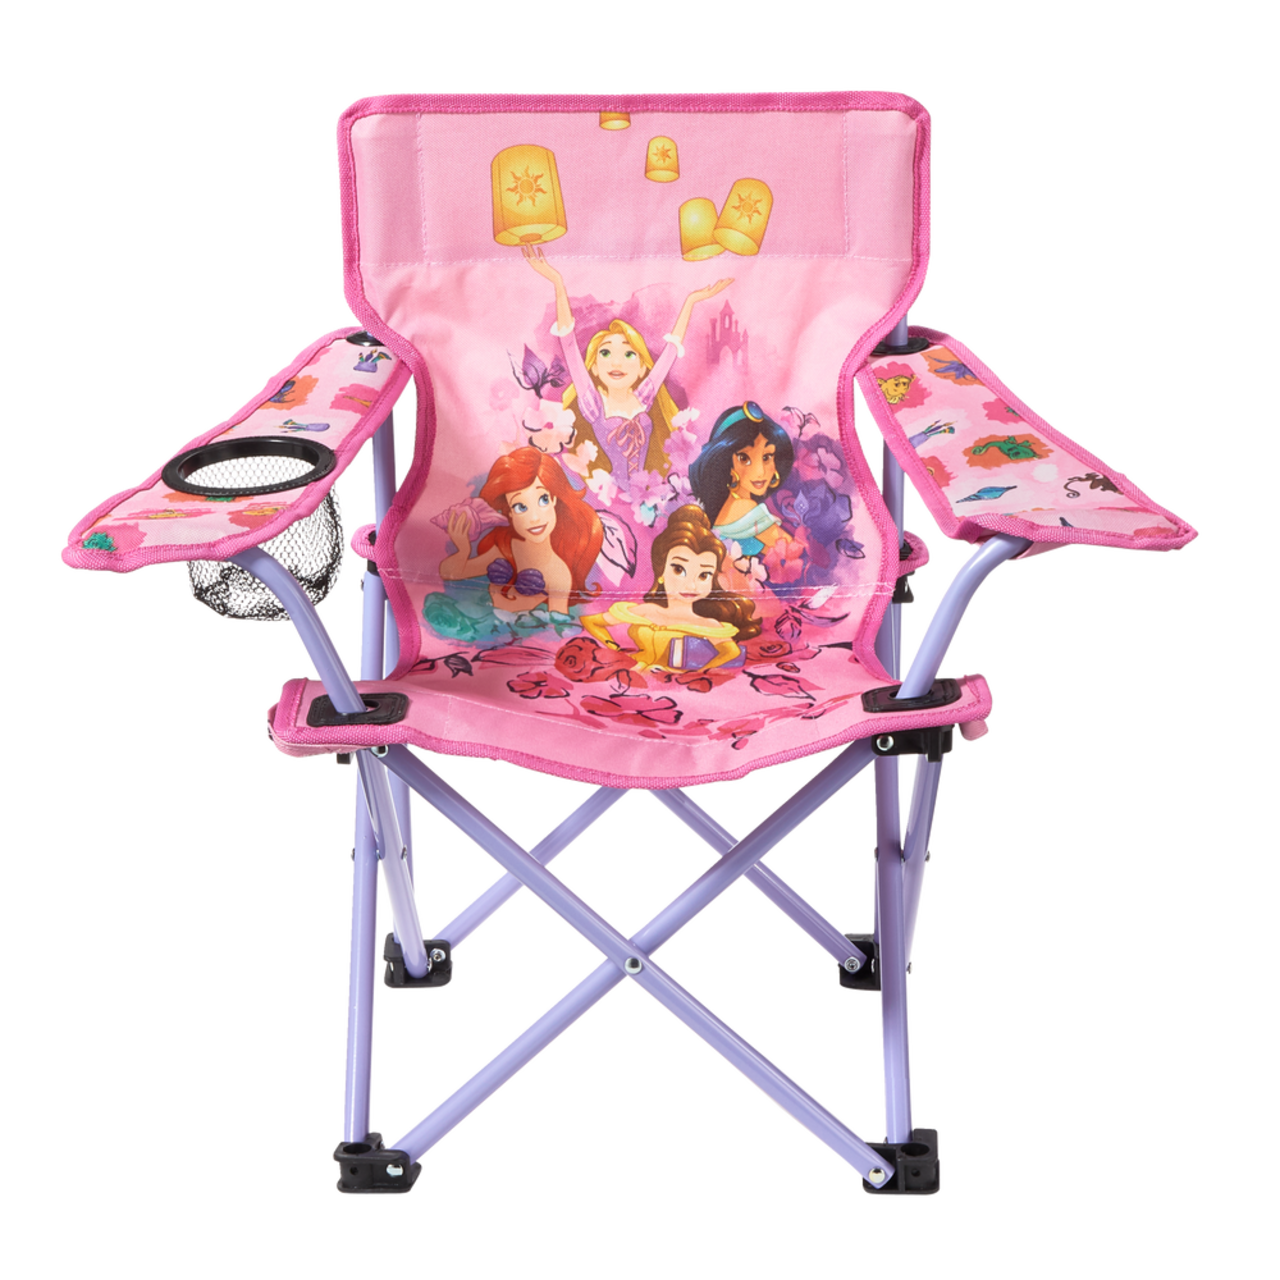 Chaise pliante enfant avec accoudoirs et porte-gobelet 100% Polyester  35x53x35cm, 53x Ø 10cm pliée, rose